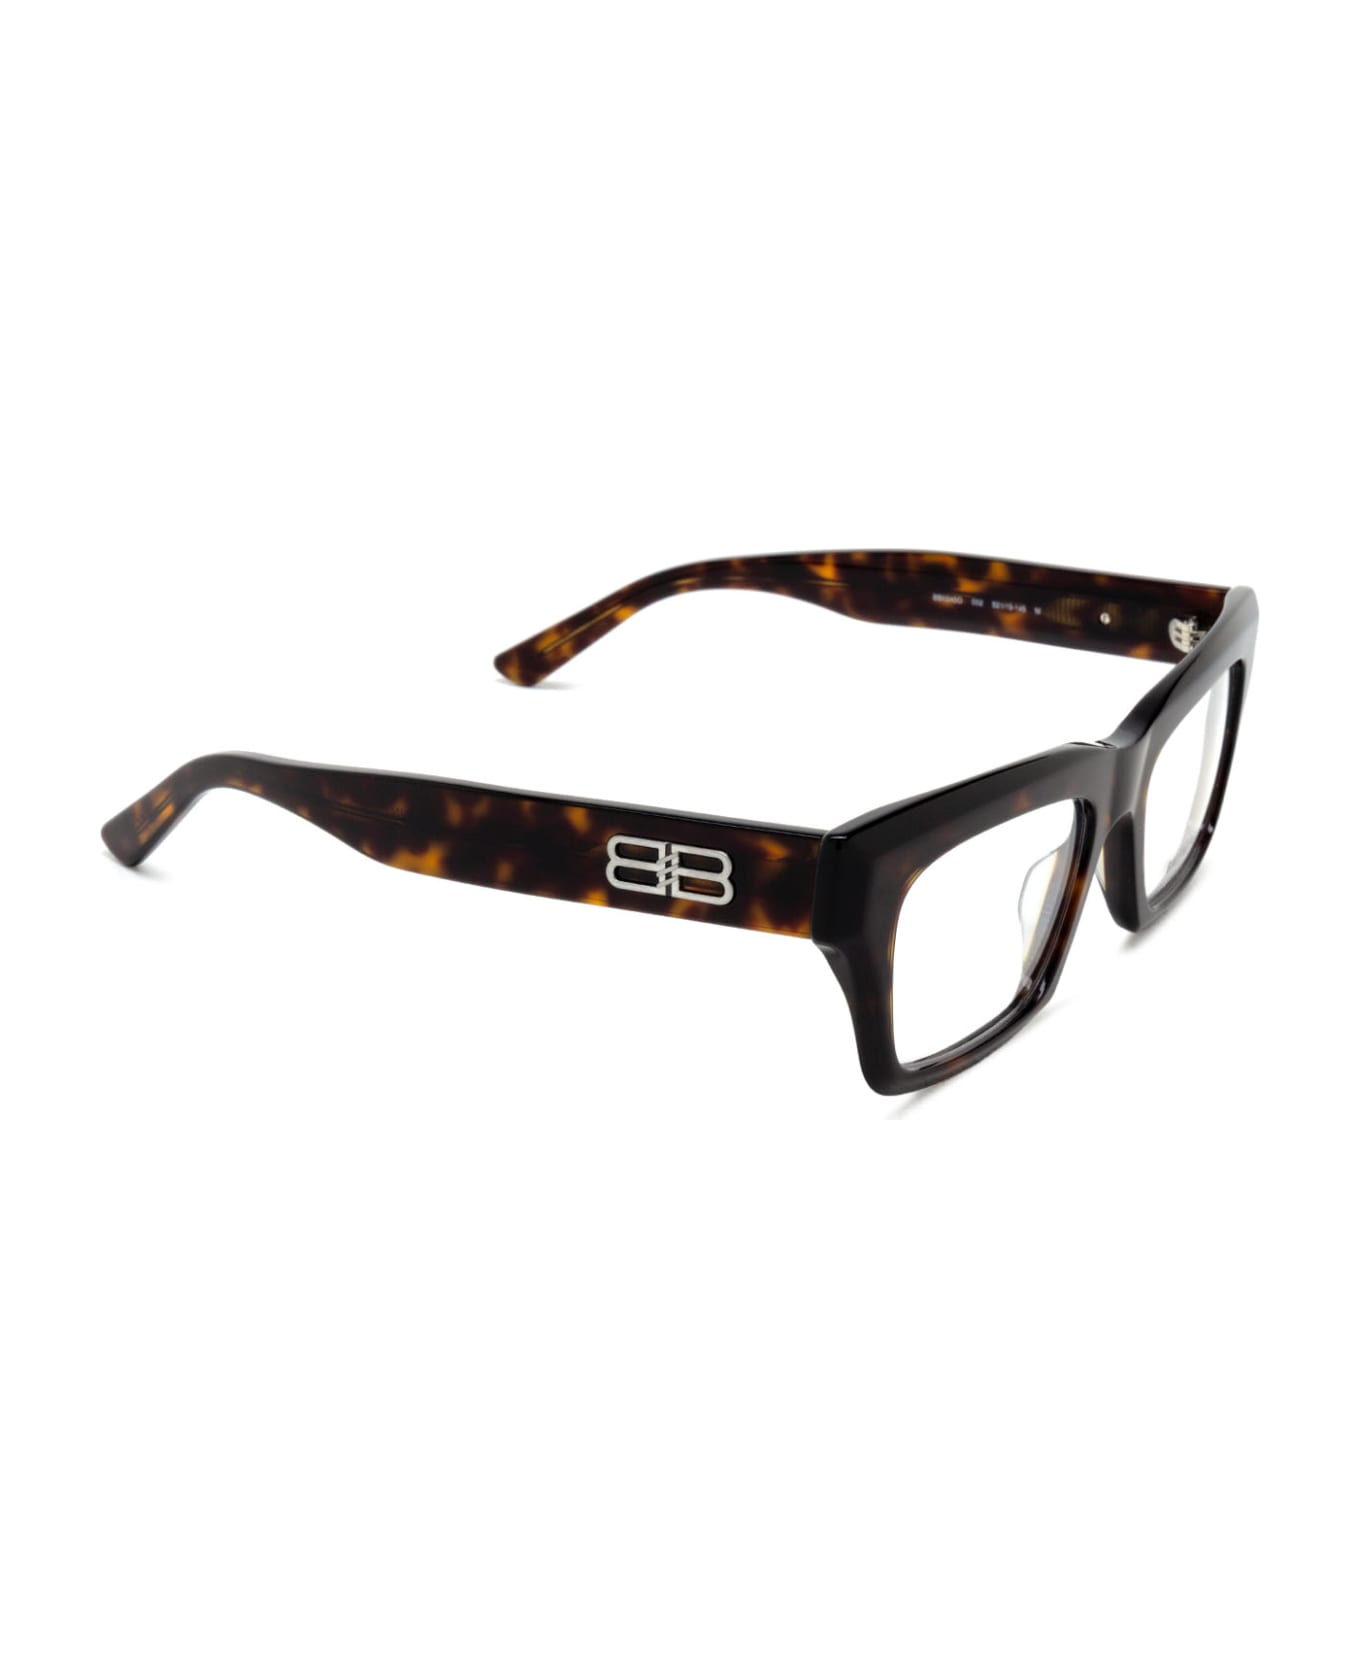 Balenciaga Eyewear Bb0240o Havana Glasses - Havana アイウェア